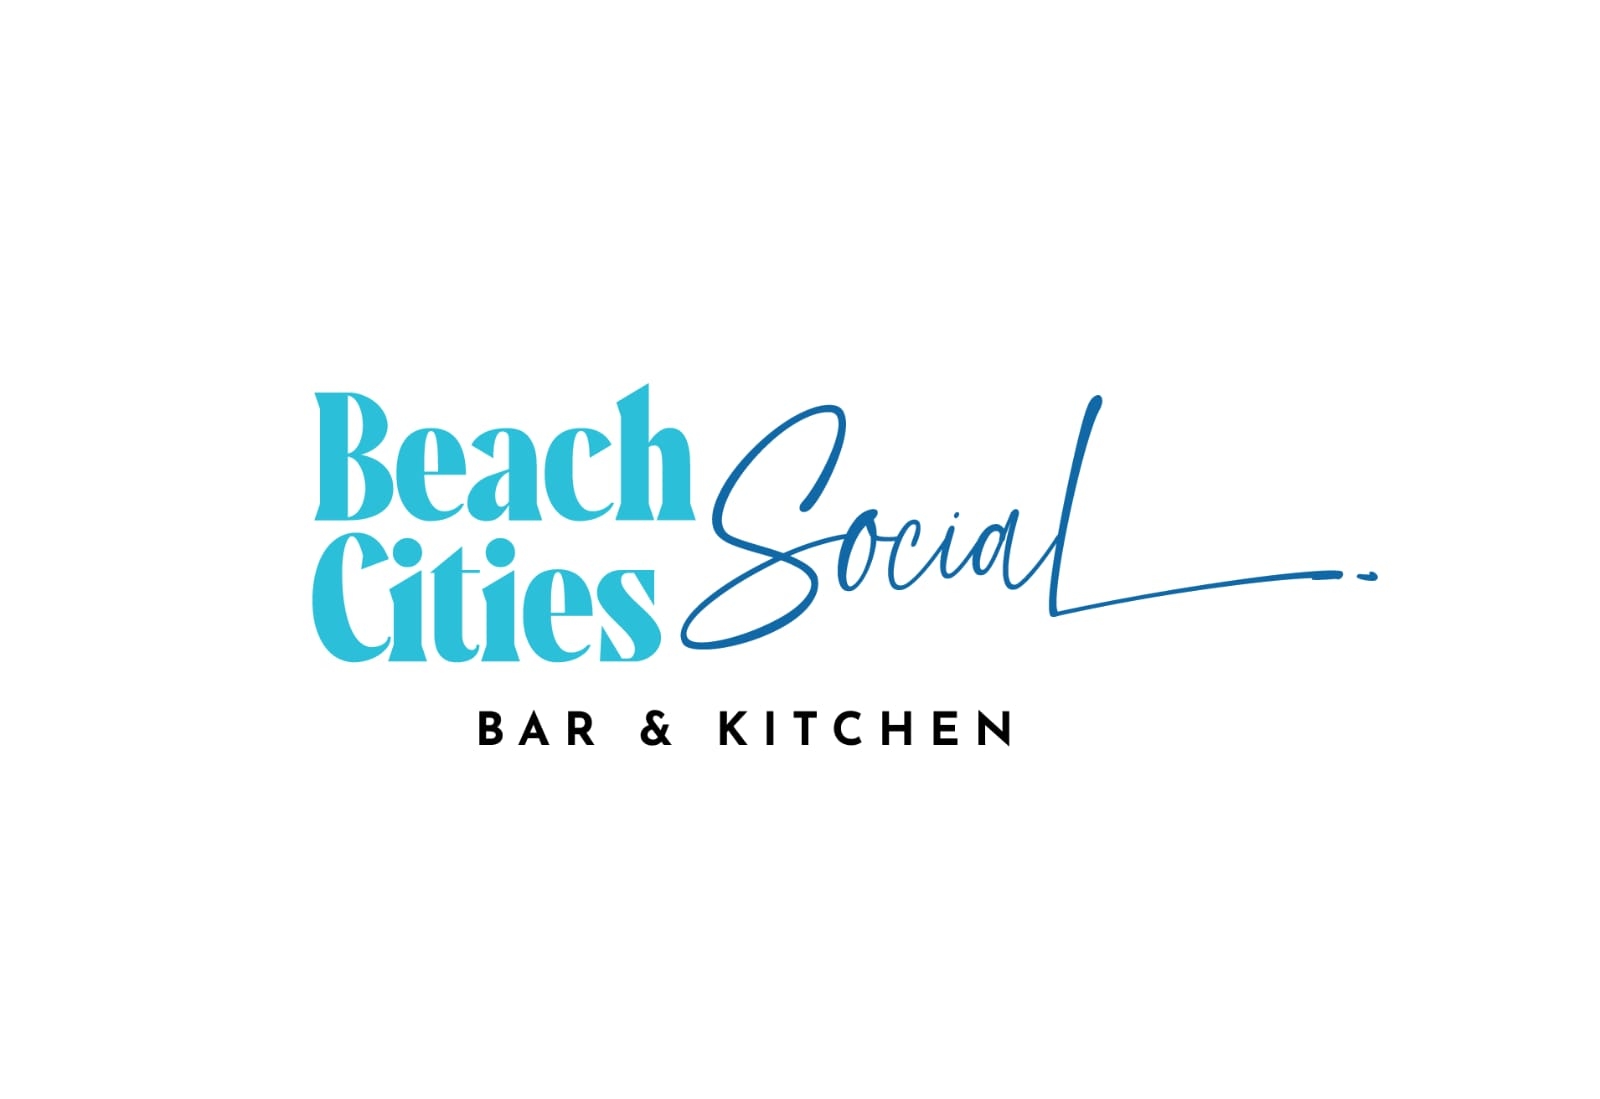 Beach Cities Social Kitchen & Bar